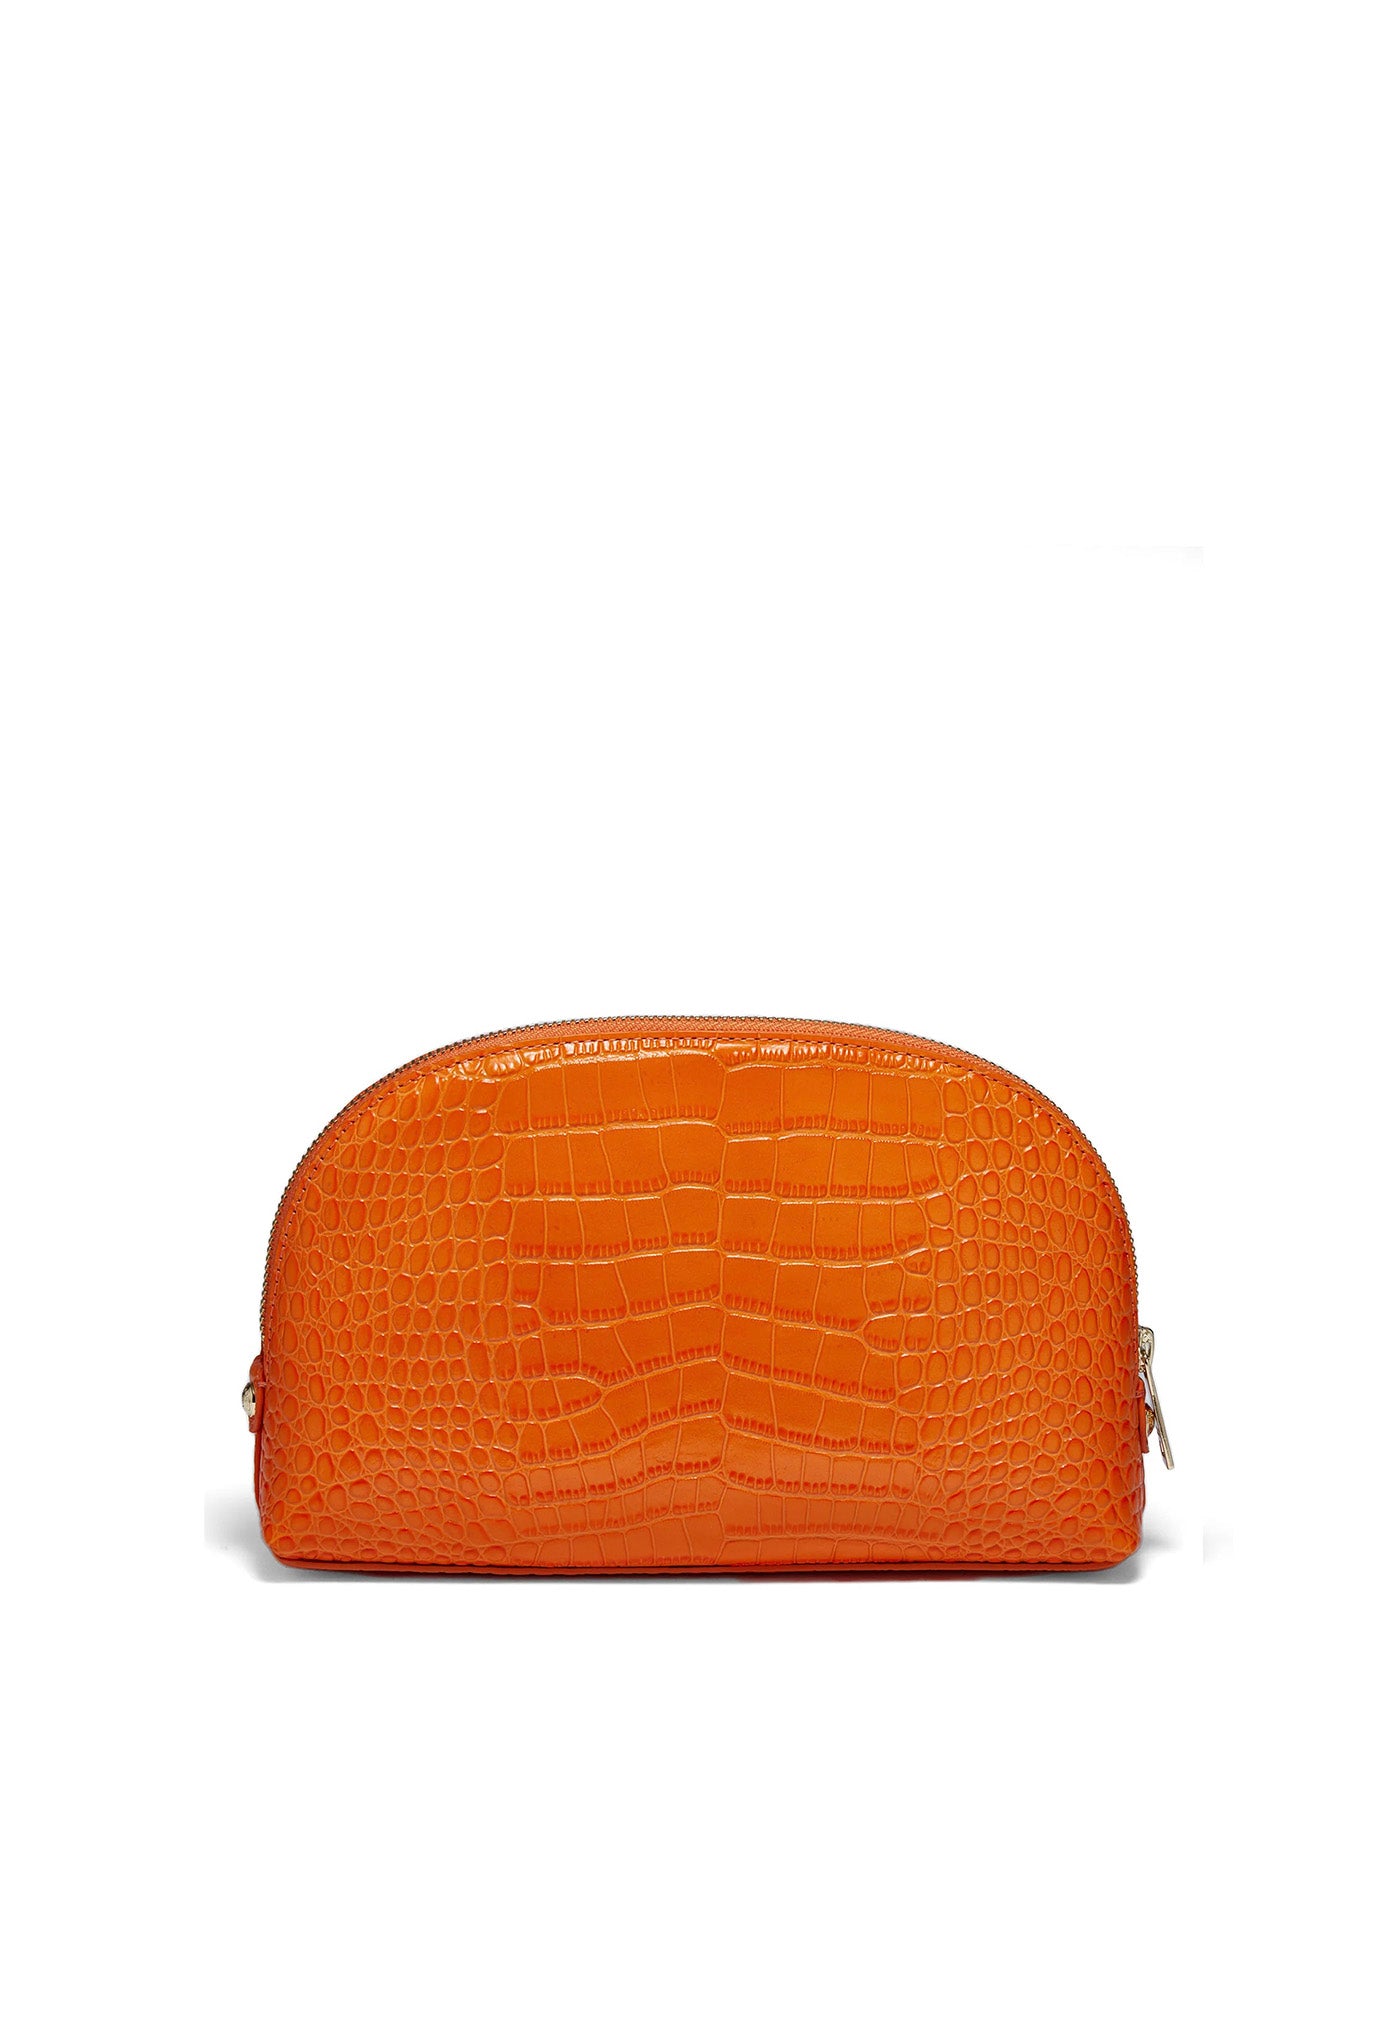 Chelsea Makeup Bag - Orange Croc sold by Angel Divine